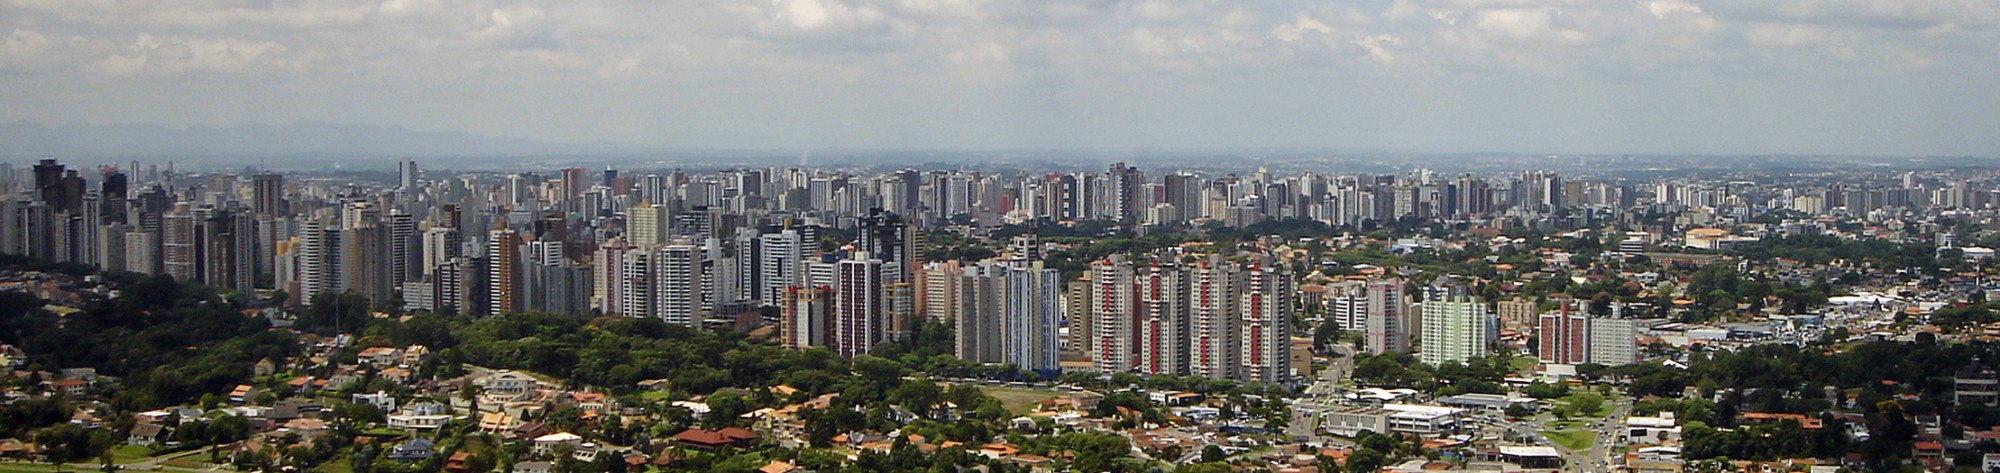 Curitiba Panorama Eixos 45 02 2006